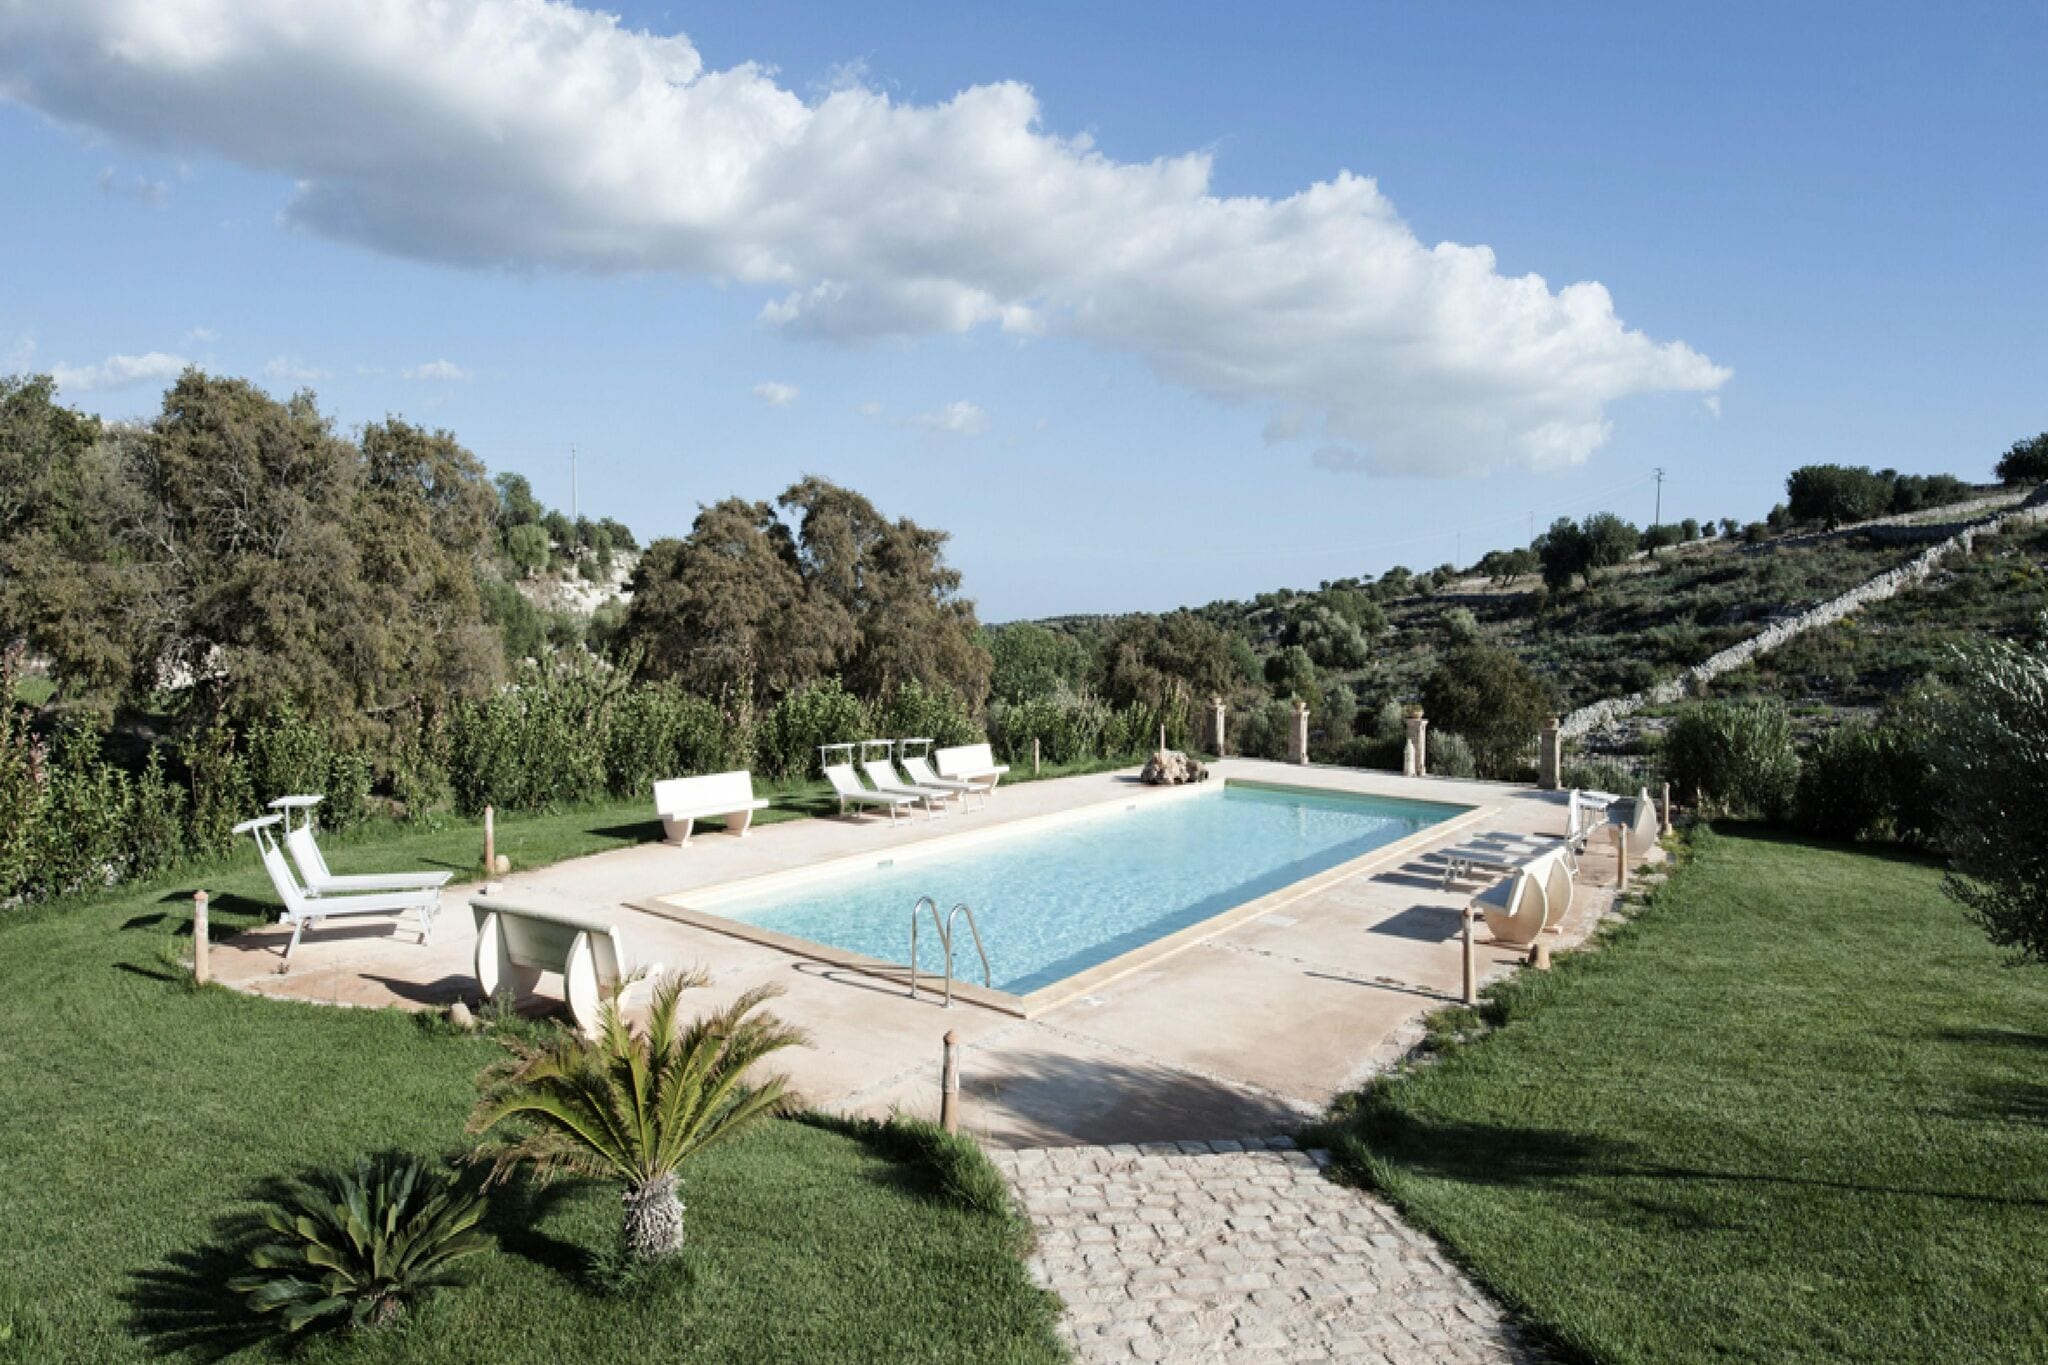 Maison de vacances confortable à Modica avec piscine commune